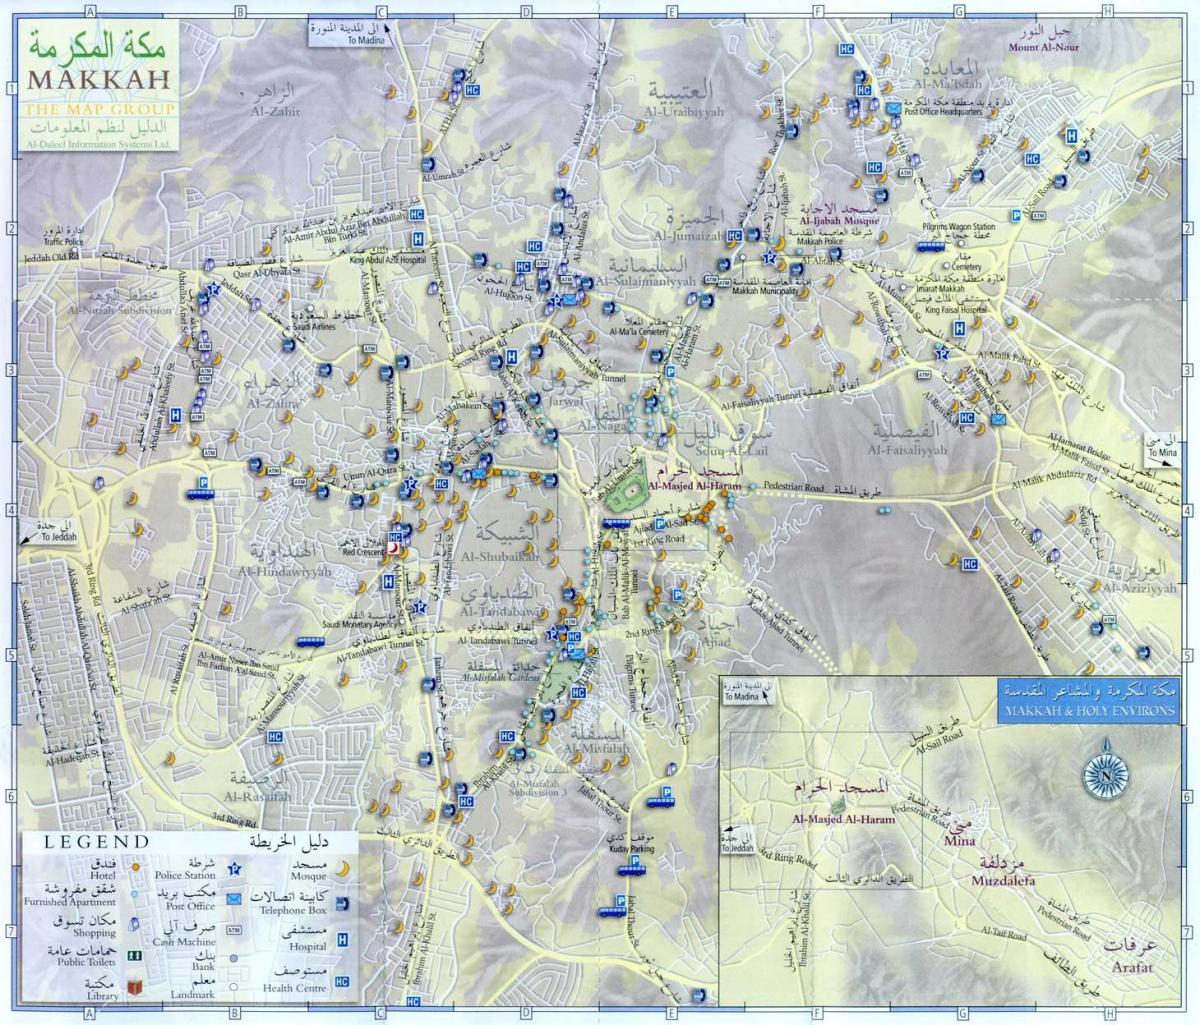 Plan de la ville de Mecca (Makkah)